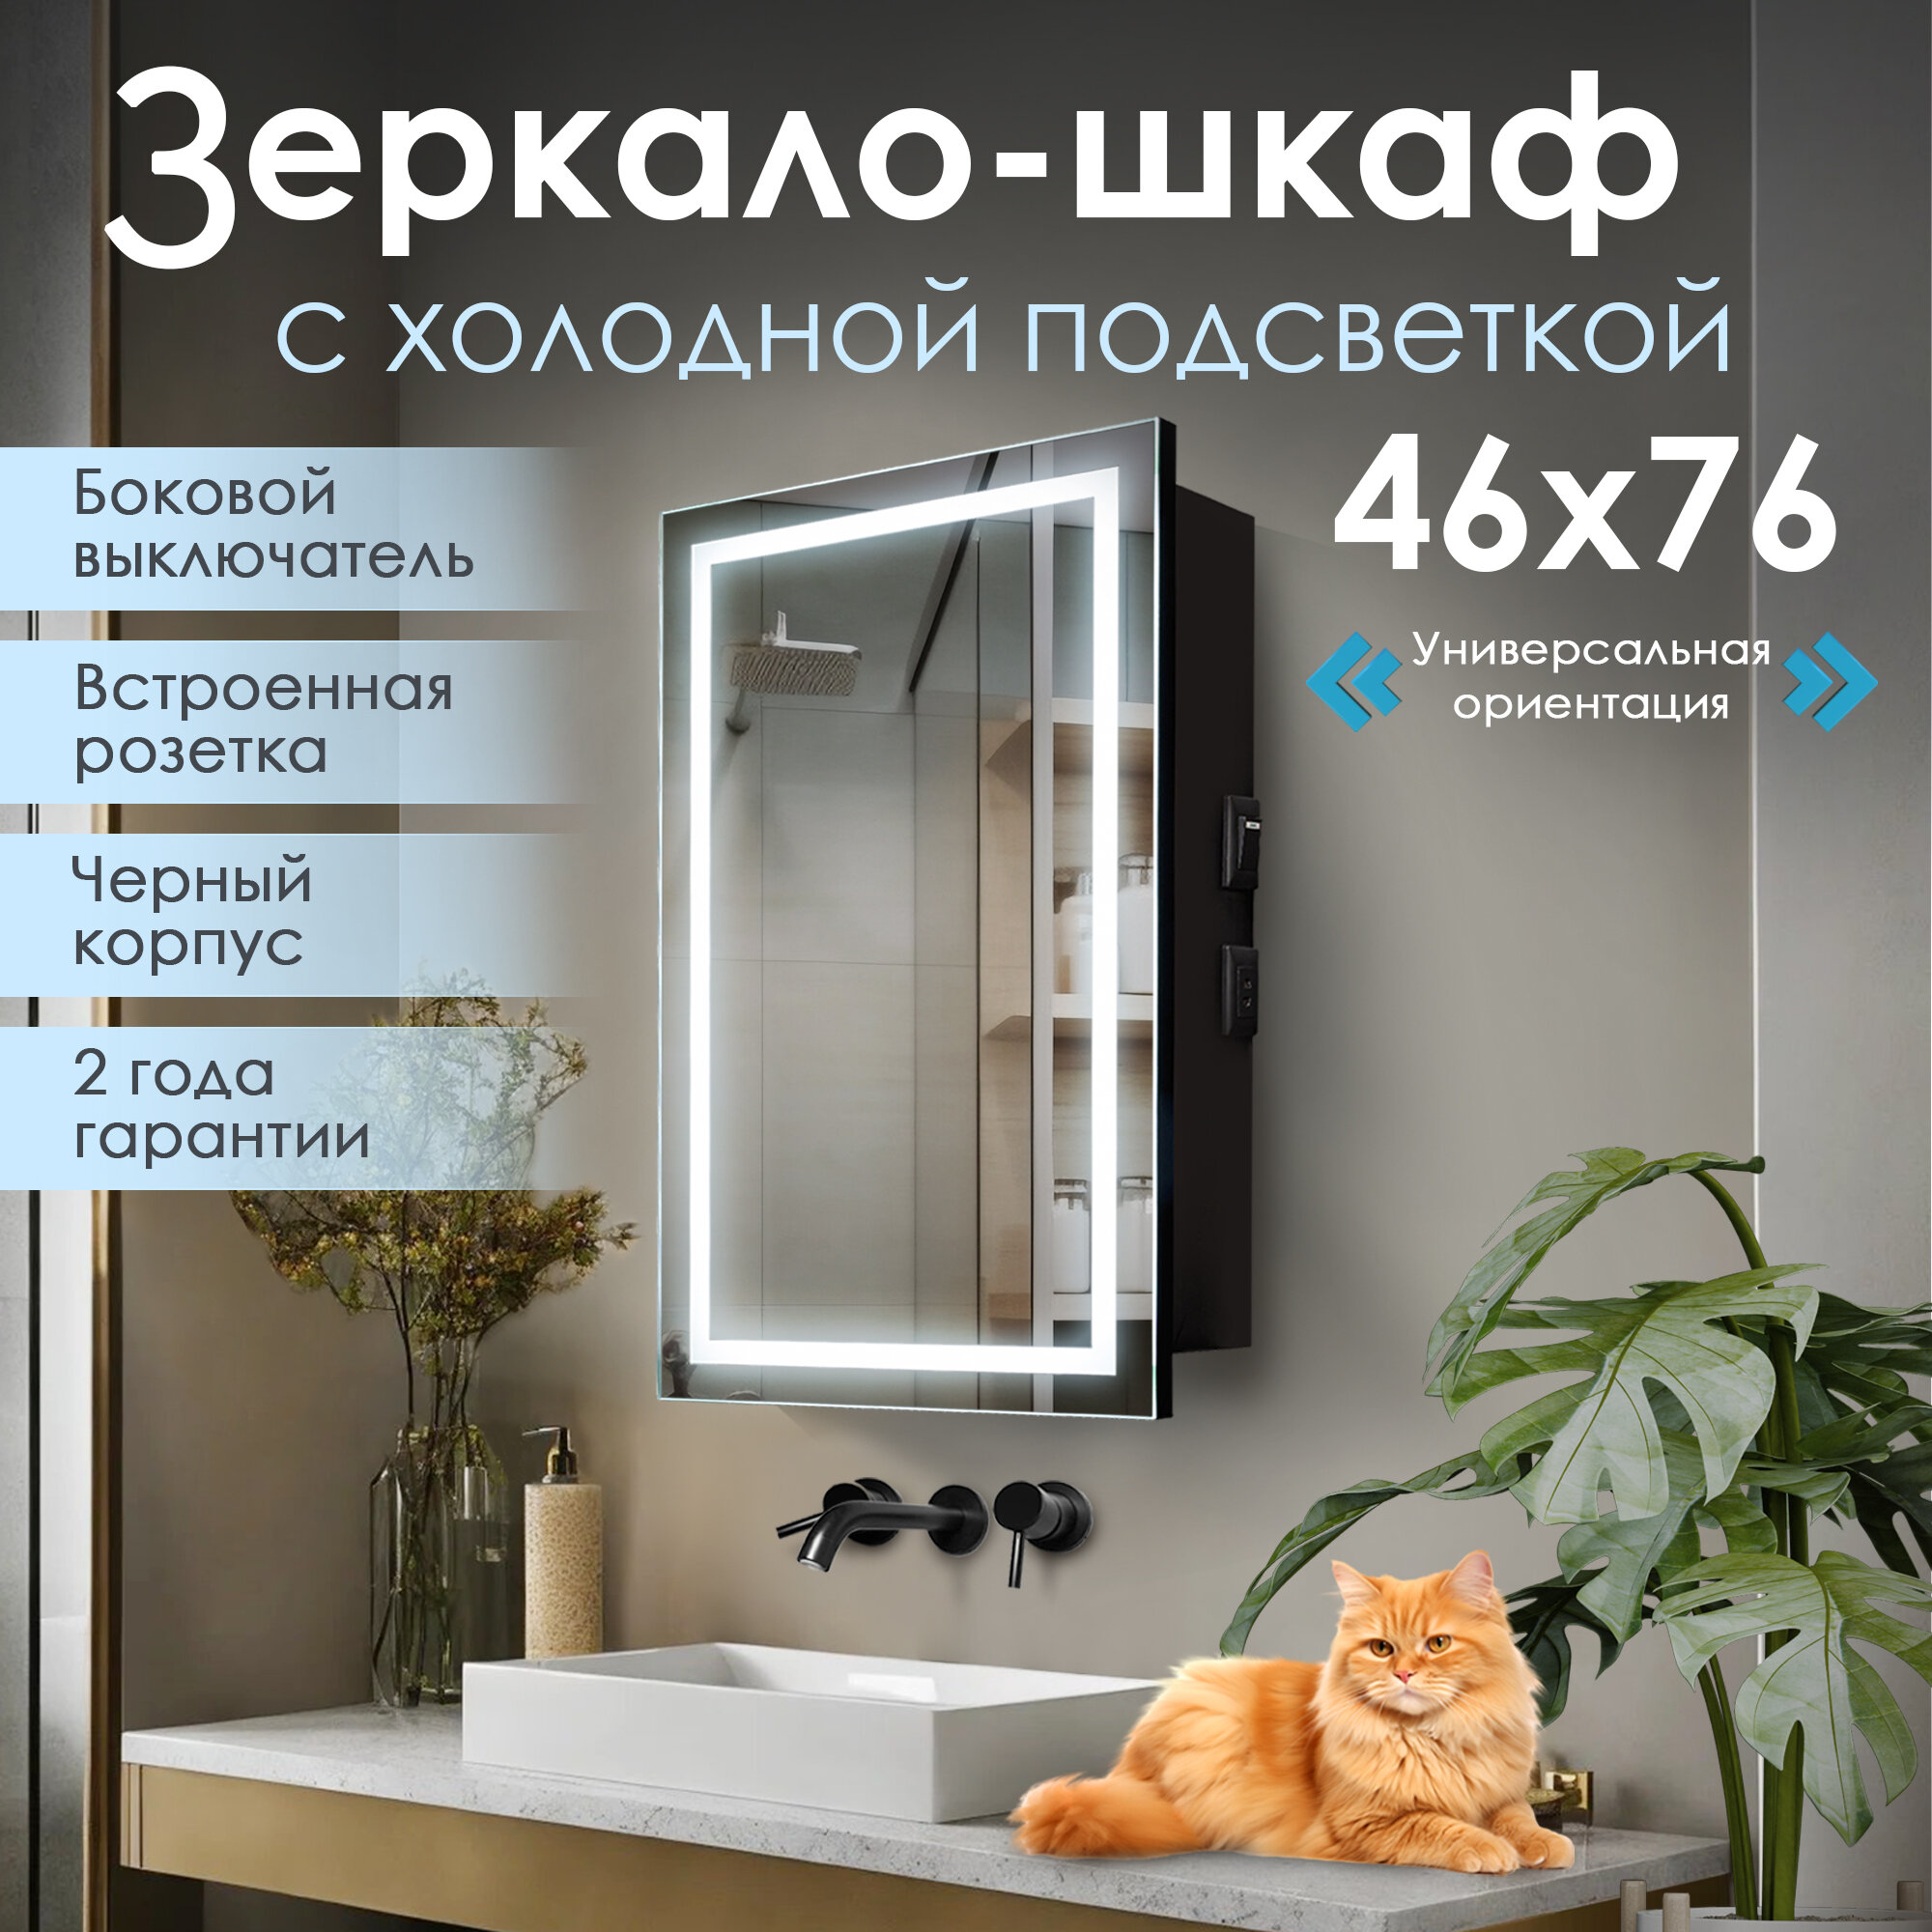 Зеркало шкаф в ванную с подсветкой Silver Mirrors "Герман-Black" 50, универсальная ориентация, холодный свет, черный корпус